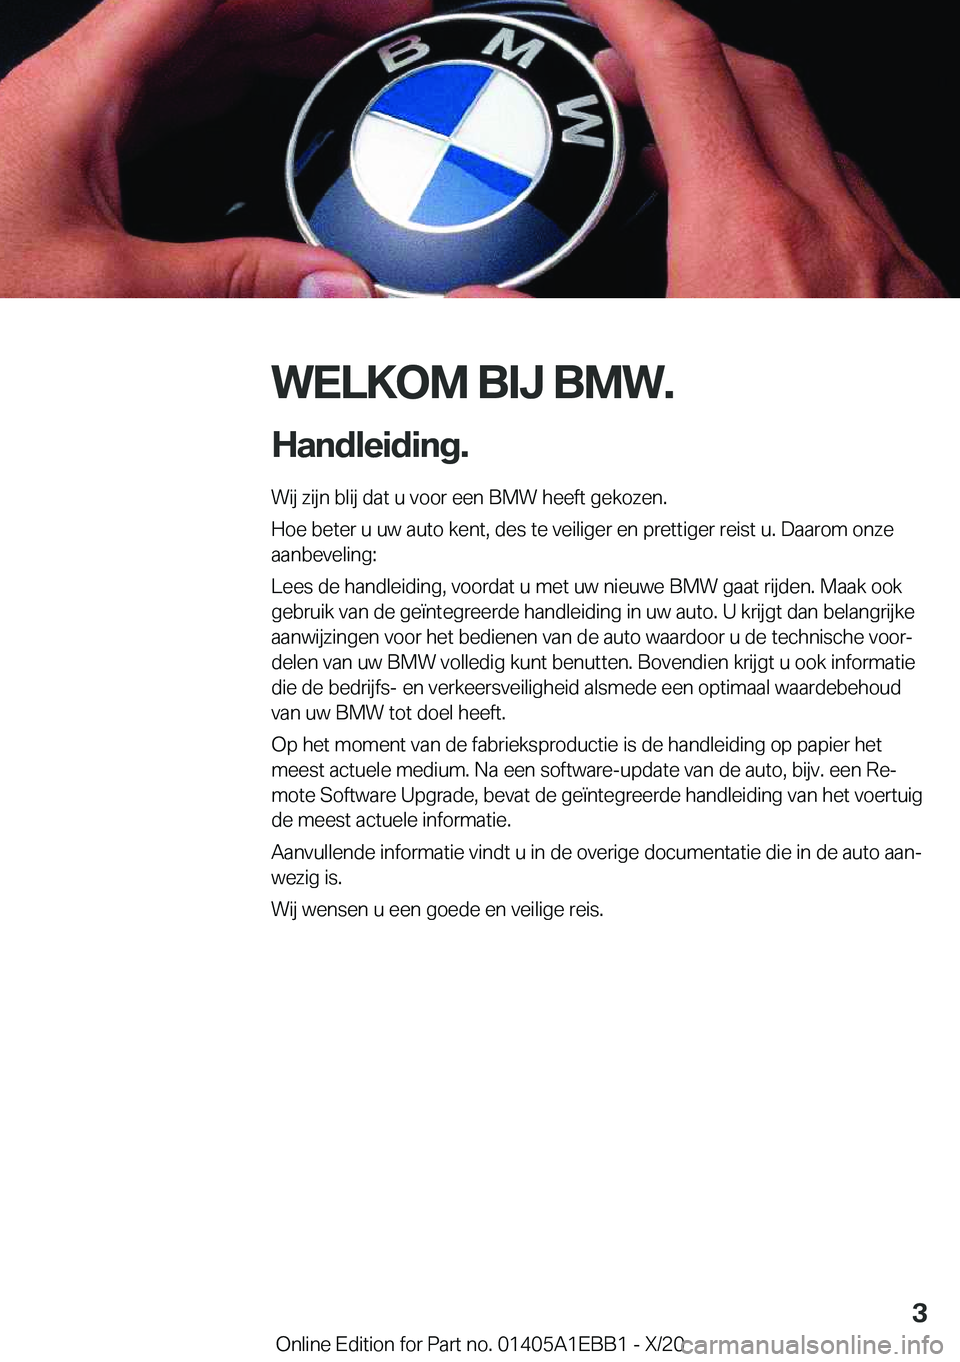 BMW 3 SERIES 2021  Instructieboekjes (in Dutch) �W�E�L�K�O�M��B�I�J��B�M�W�.
�H�a�n�d�l�e�i�d�i�n�g�. �W�i�j��z�i�j�n��b�l�i�j��d�a�t��u��v�o�o�r��e�e�n��B�M�W��h�e�e�f�t��g�e�k�o�z�e�n�.
�H�o�e��b�e�t�e�r��u��u�w��a�u�t�o��k�e�n�t�